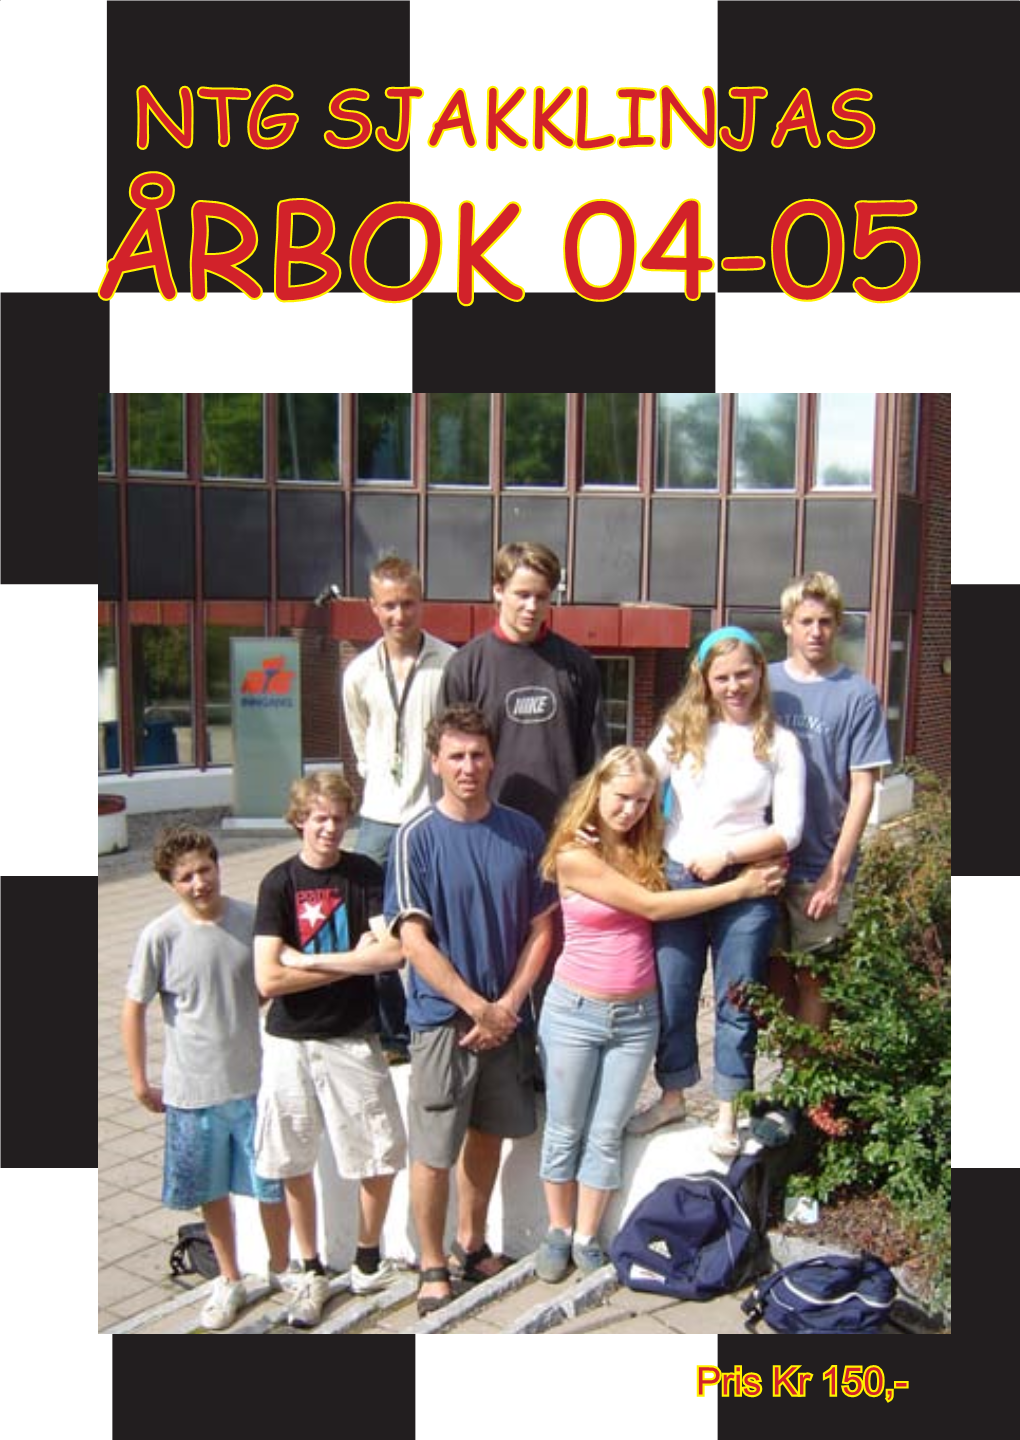 Ntg Sjakklinjas Årbok 04-05